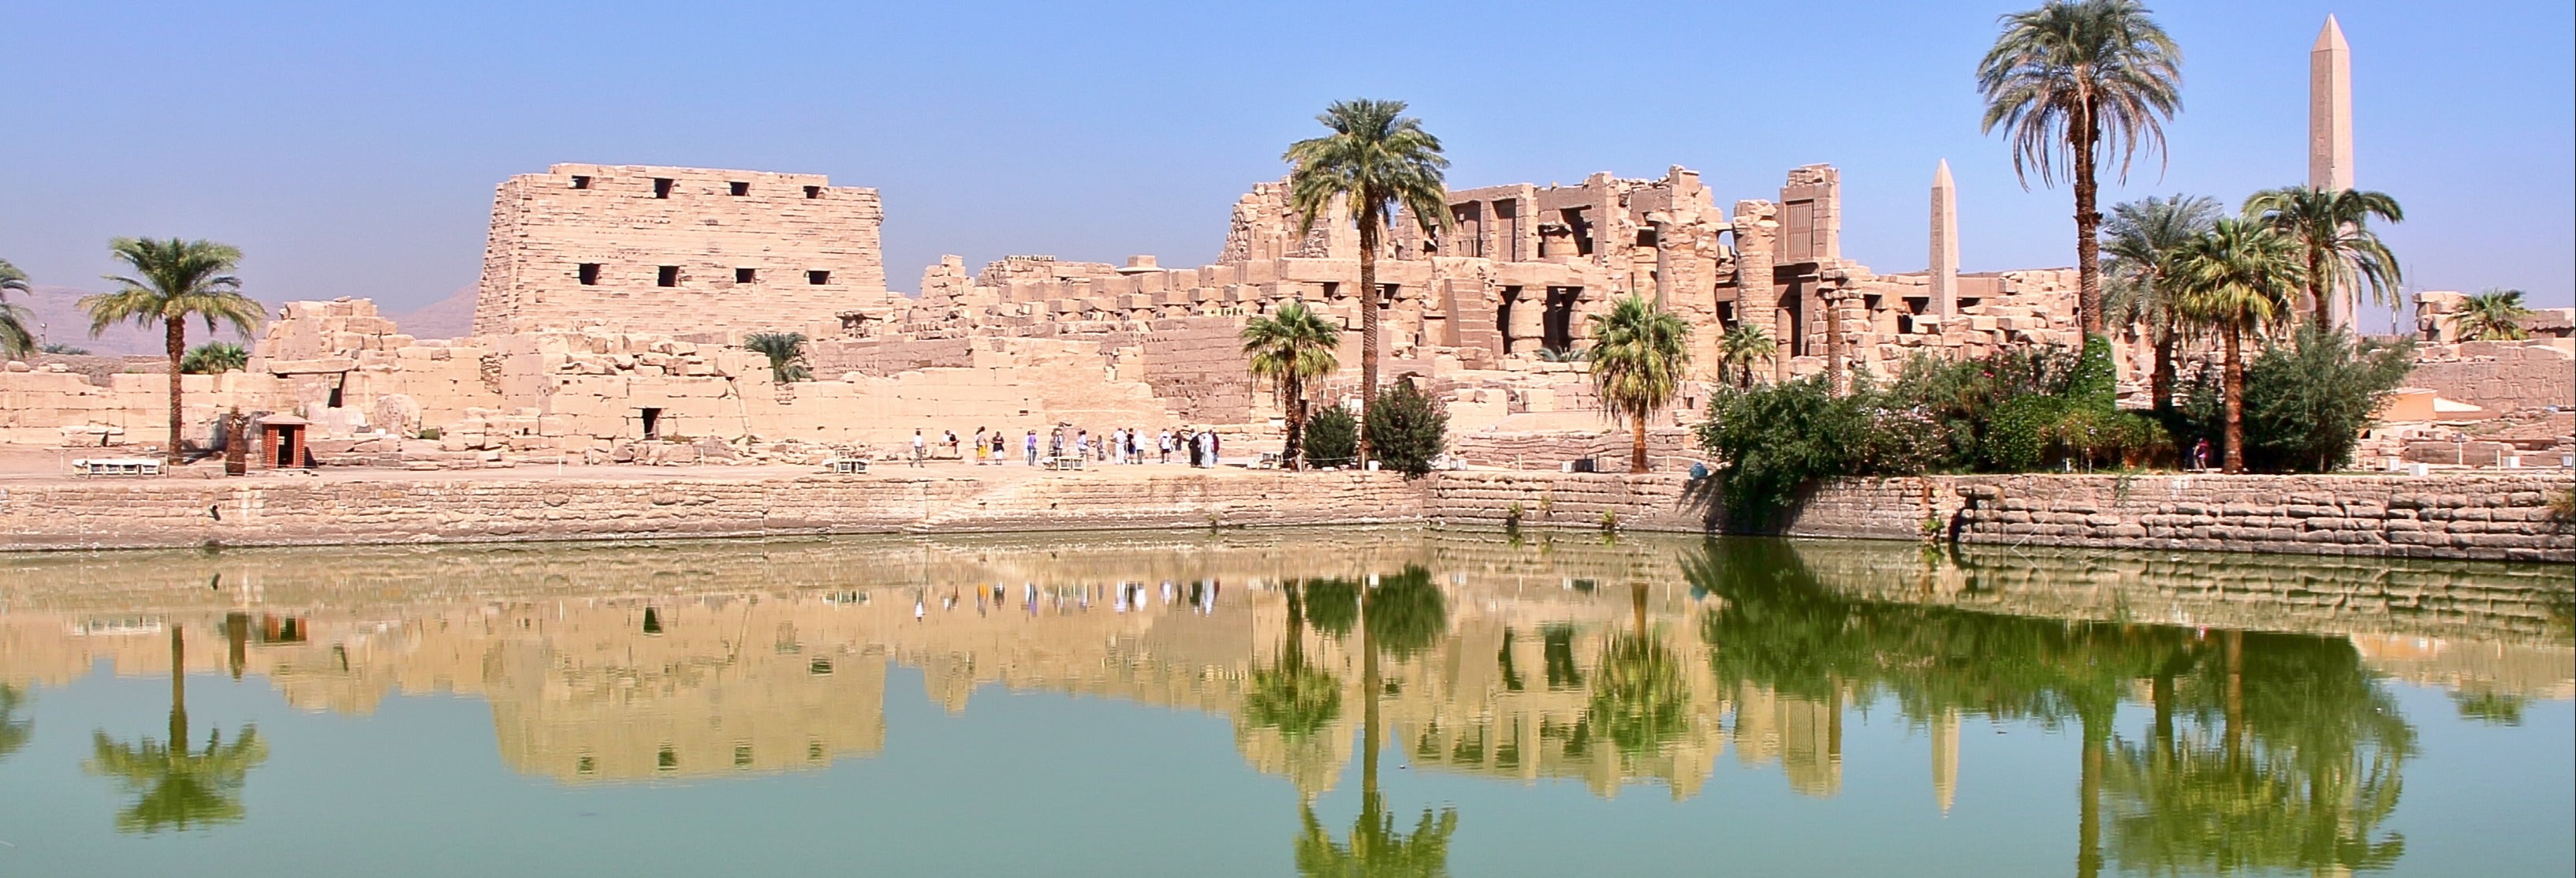 Visita guiada ao Templo de Luxor e ao Templo de Karnak